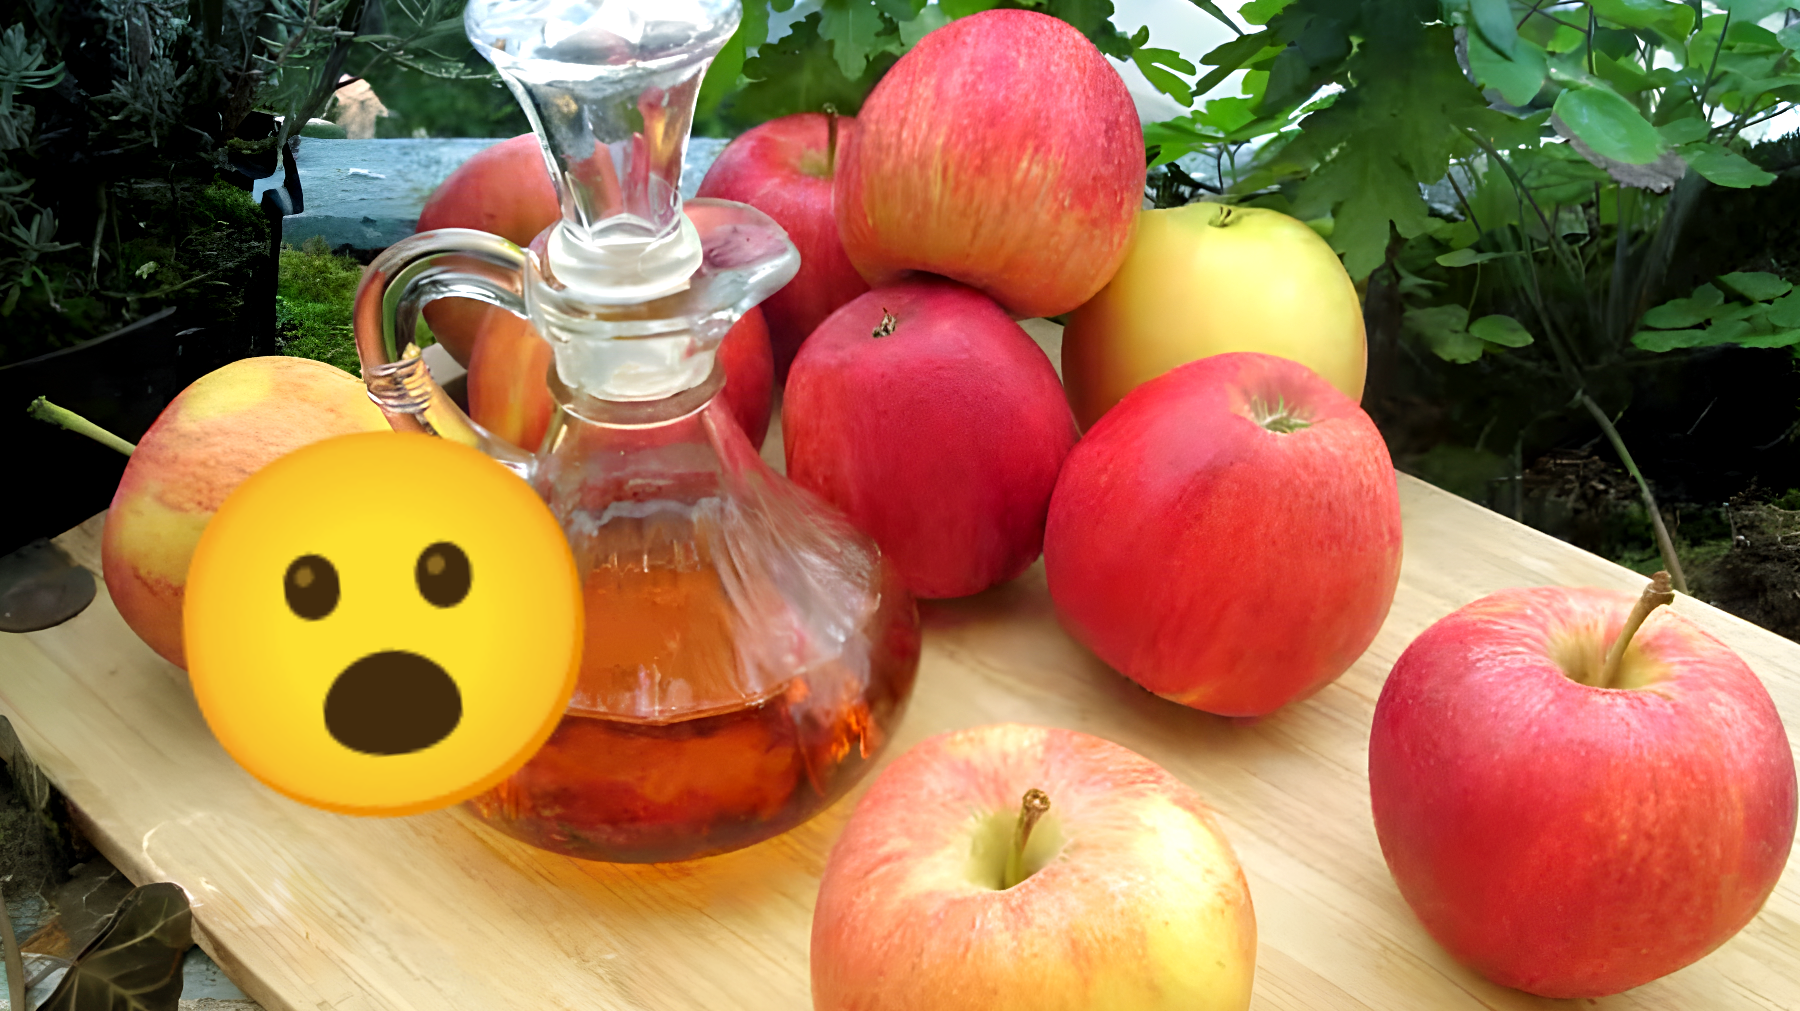 Scoperta sconvolgente sull'aceto di mele: "Non usarlo mai più, la tua salute è a rischio"